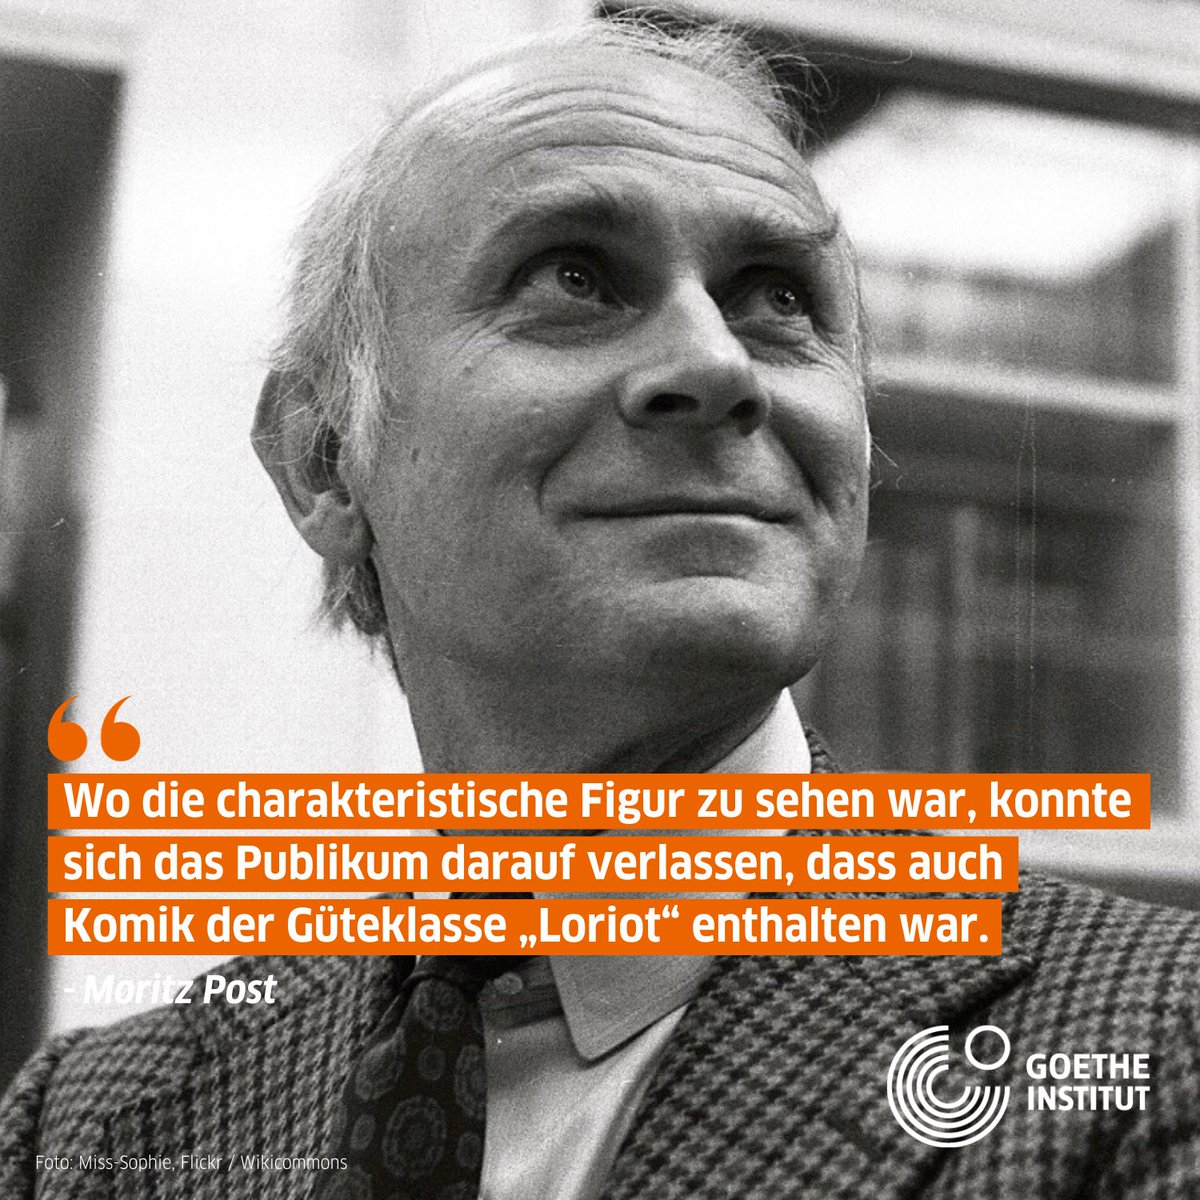 😹長年にわたり、ヴィッコ・フォン・ビューロー（「 #ロリオ 」の名で知られる）はドイツの人々を笑わせてきました。
今日11月12日はロリオ生誕100周年の日。このドイツで最も有名なコメディアンの人生と作品について #DeutschlandNoFilter で読んでみませんか？👇
goethe.de/prj/ger/de/ihr…